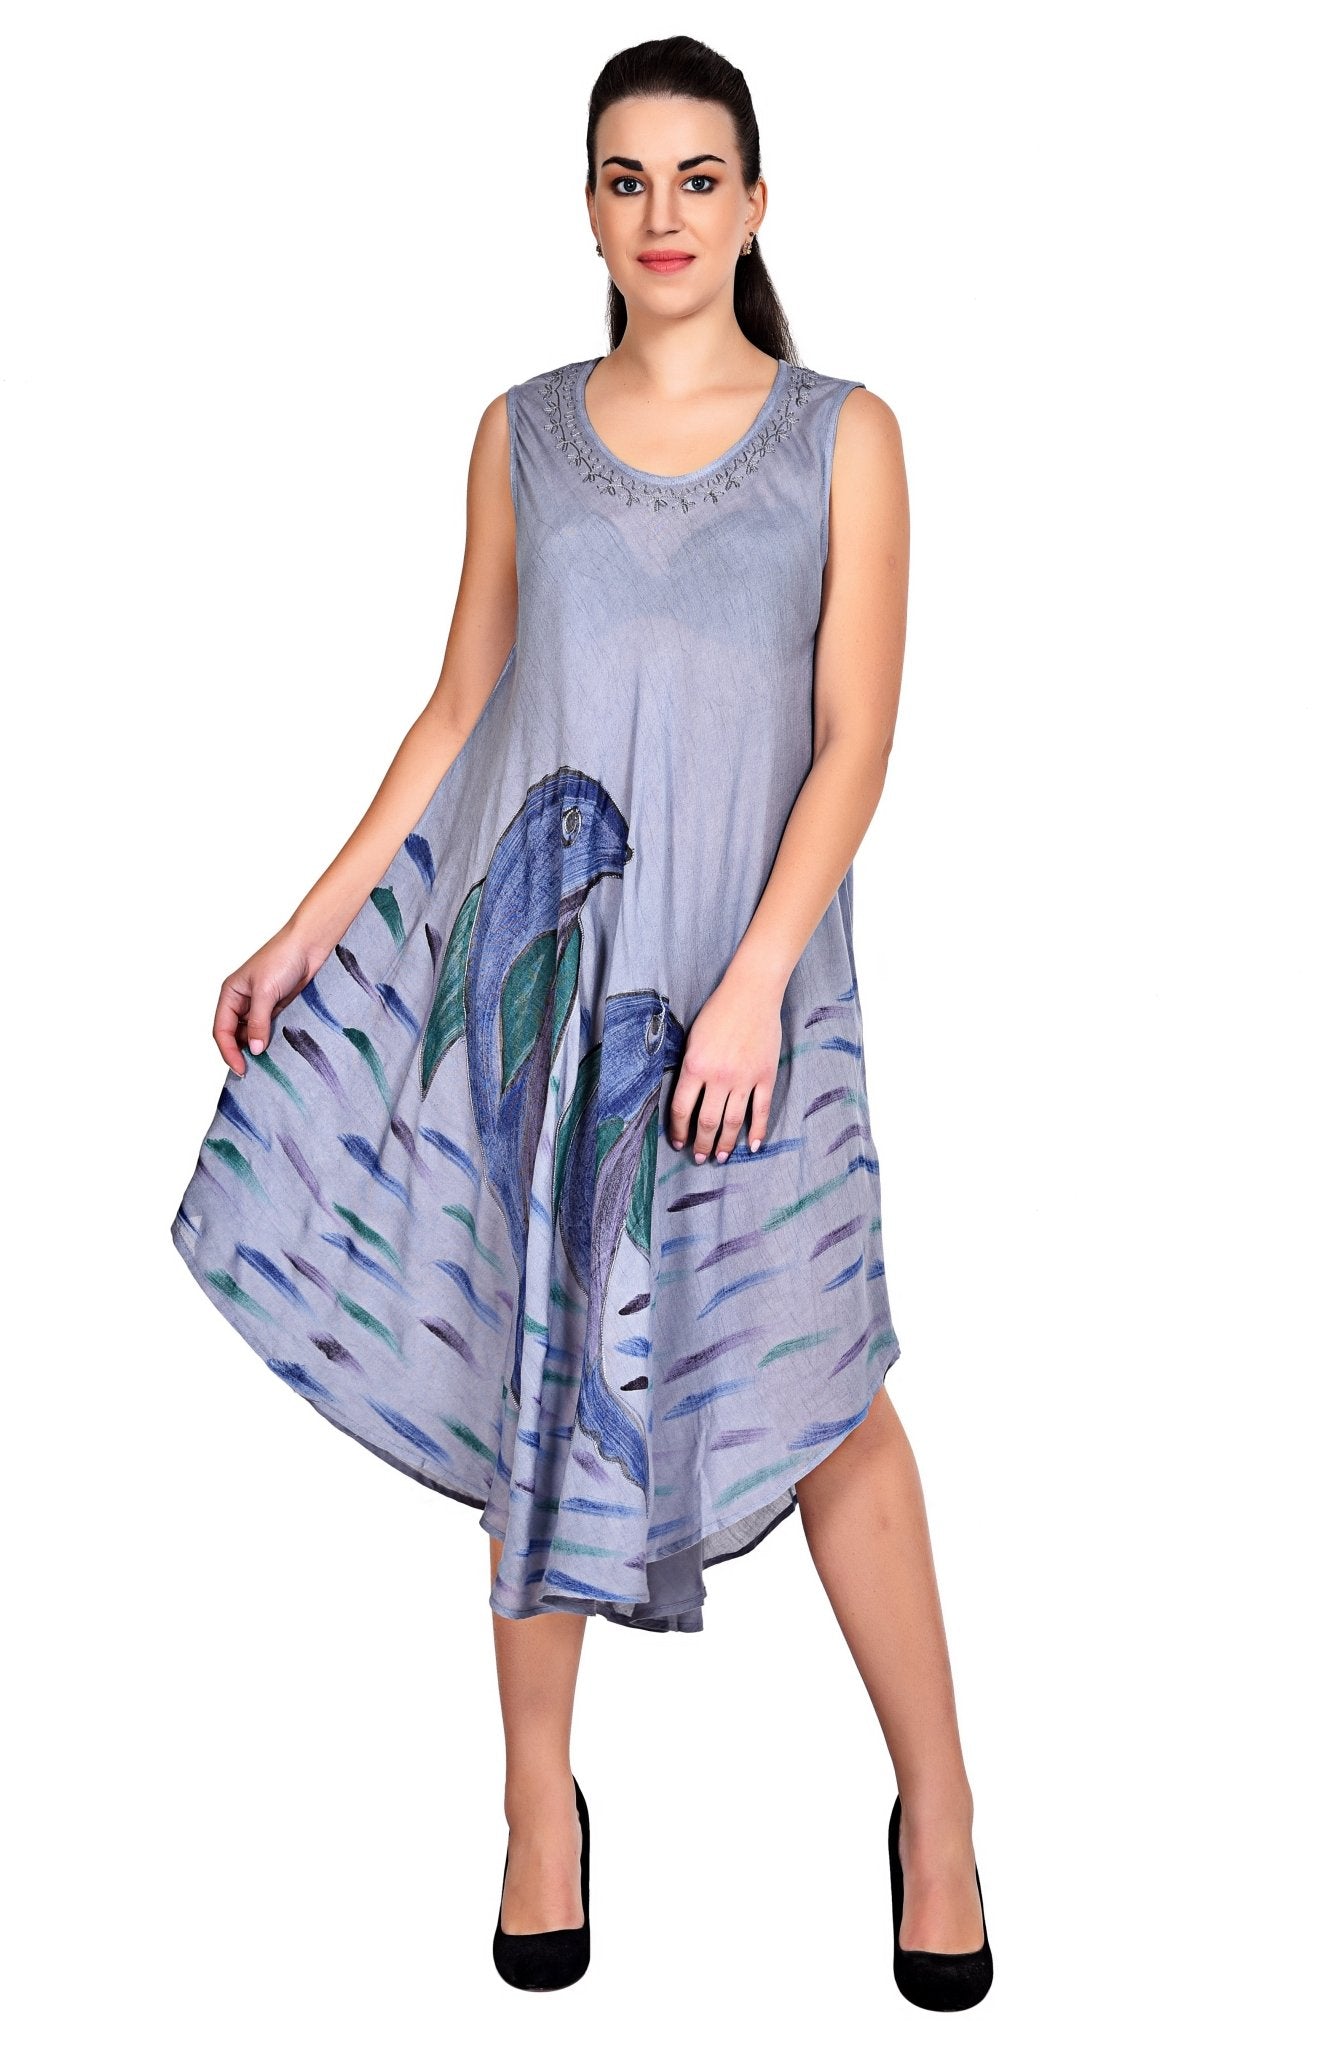 Dolphin Print Resort Dress 20304 - Advance Apparels Inc